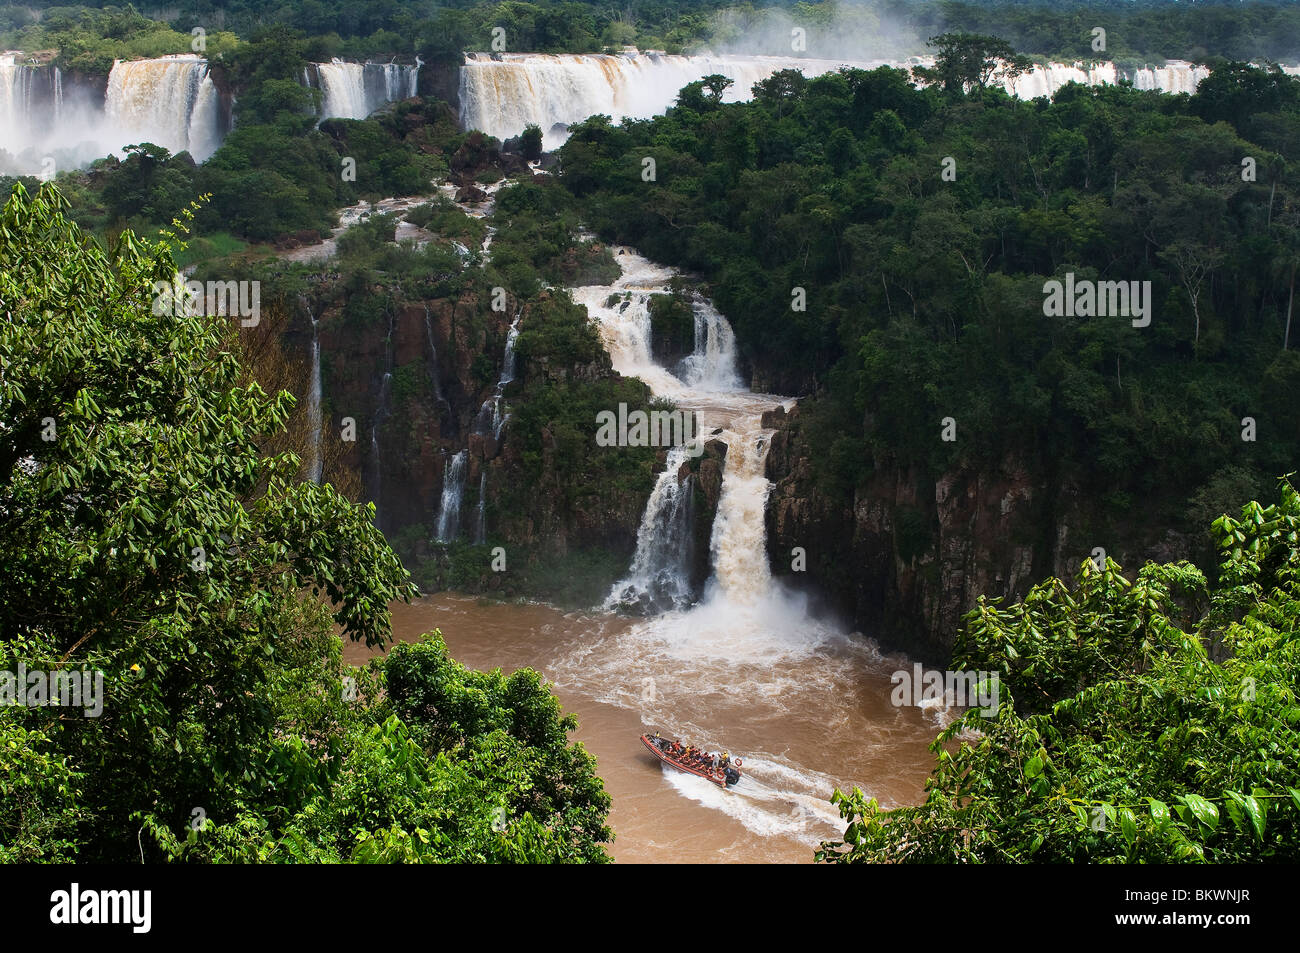 Les touristes à Iguaçu Falls, l'une des plus grandes chutes dans le monde, l'État du Paraná, Brésil Banque D'Images